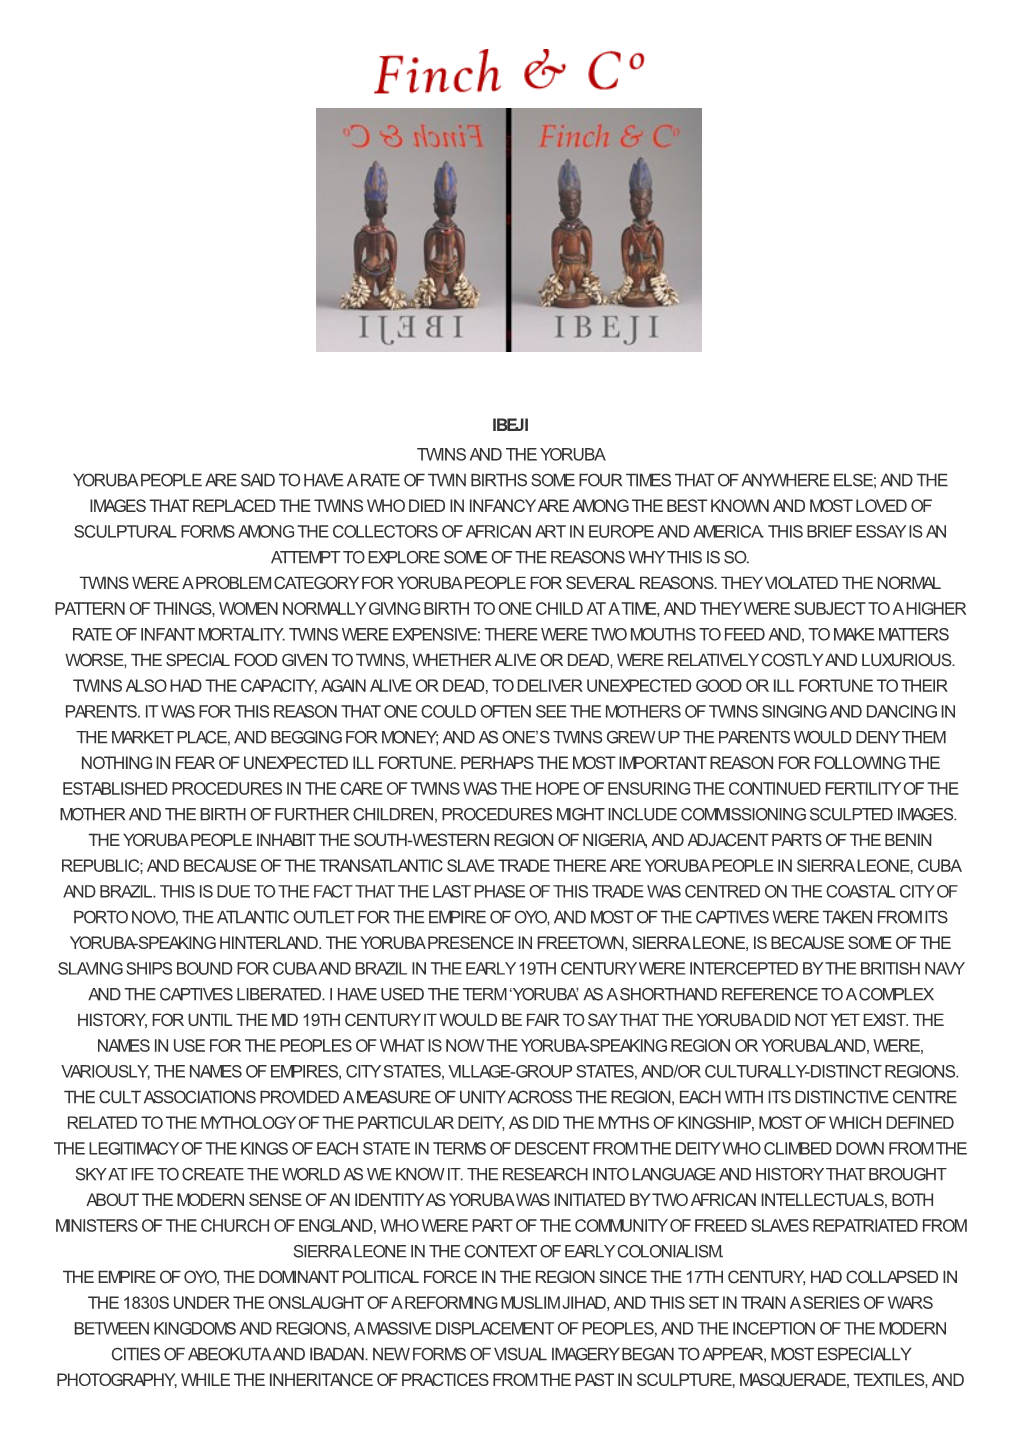 Ibeji Twins and the Yoruba Yoruba People